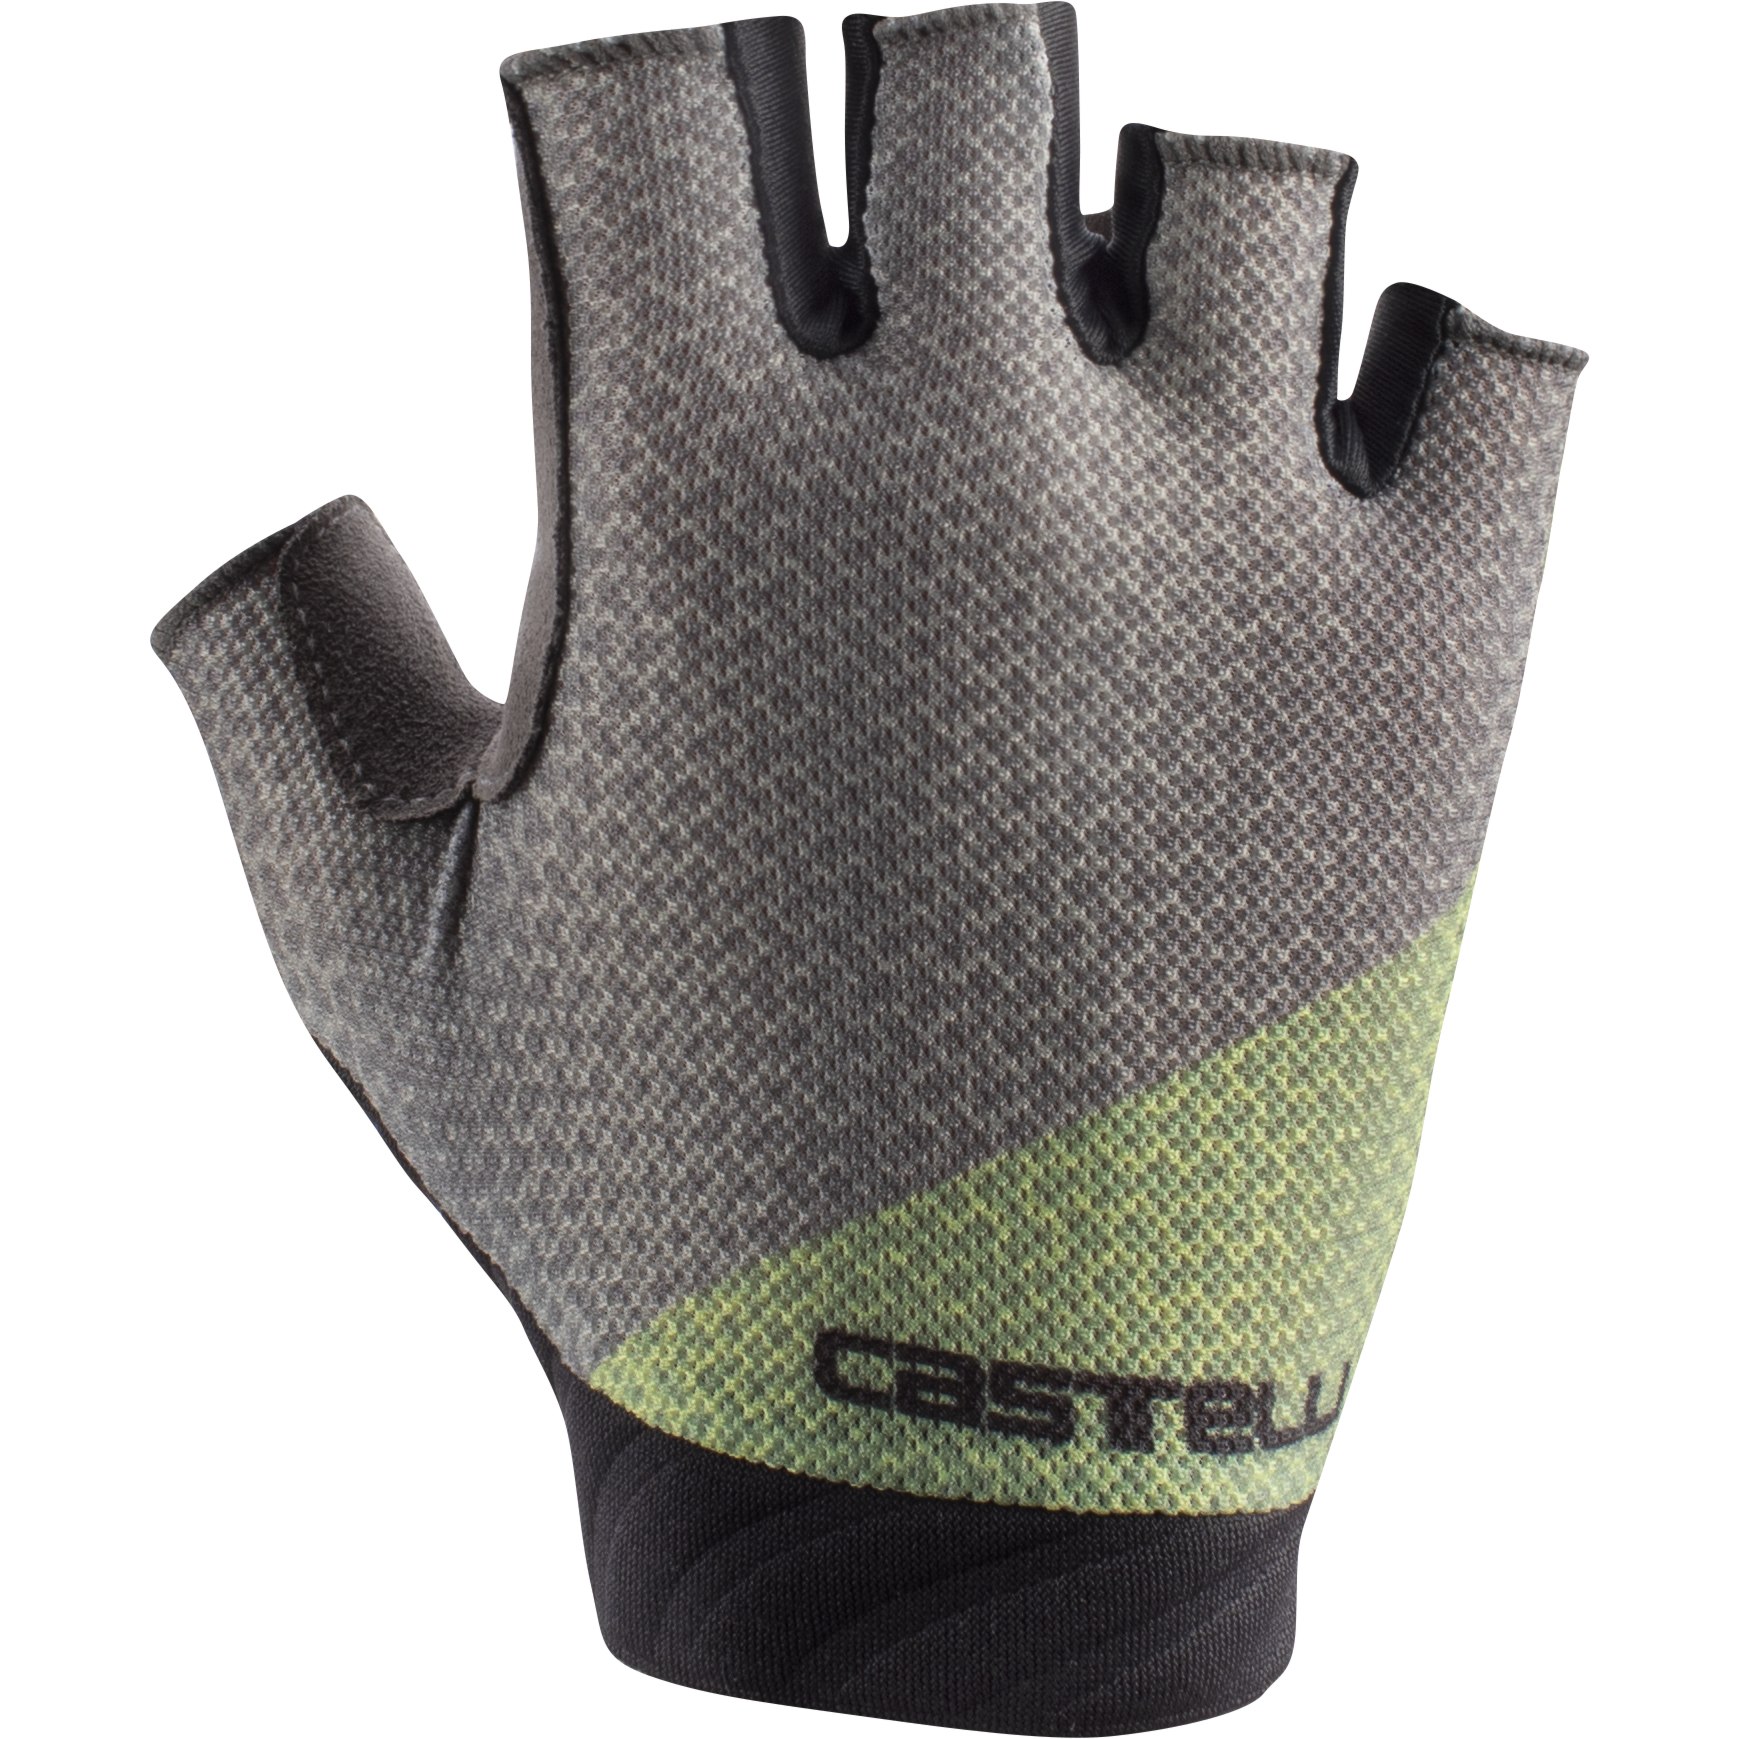 Produktbild von Castelli Roubaix Gel 2 Damen Handschuhe - travertine grey 076